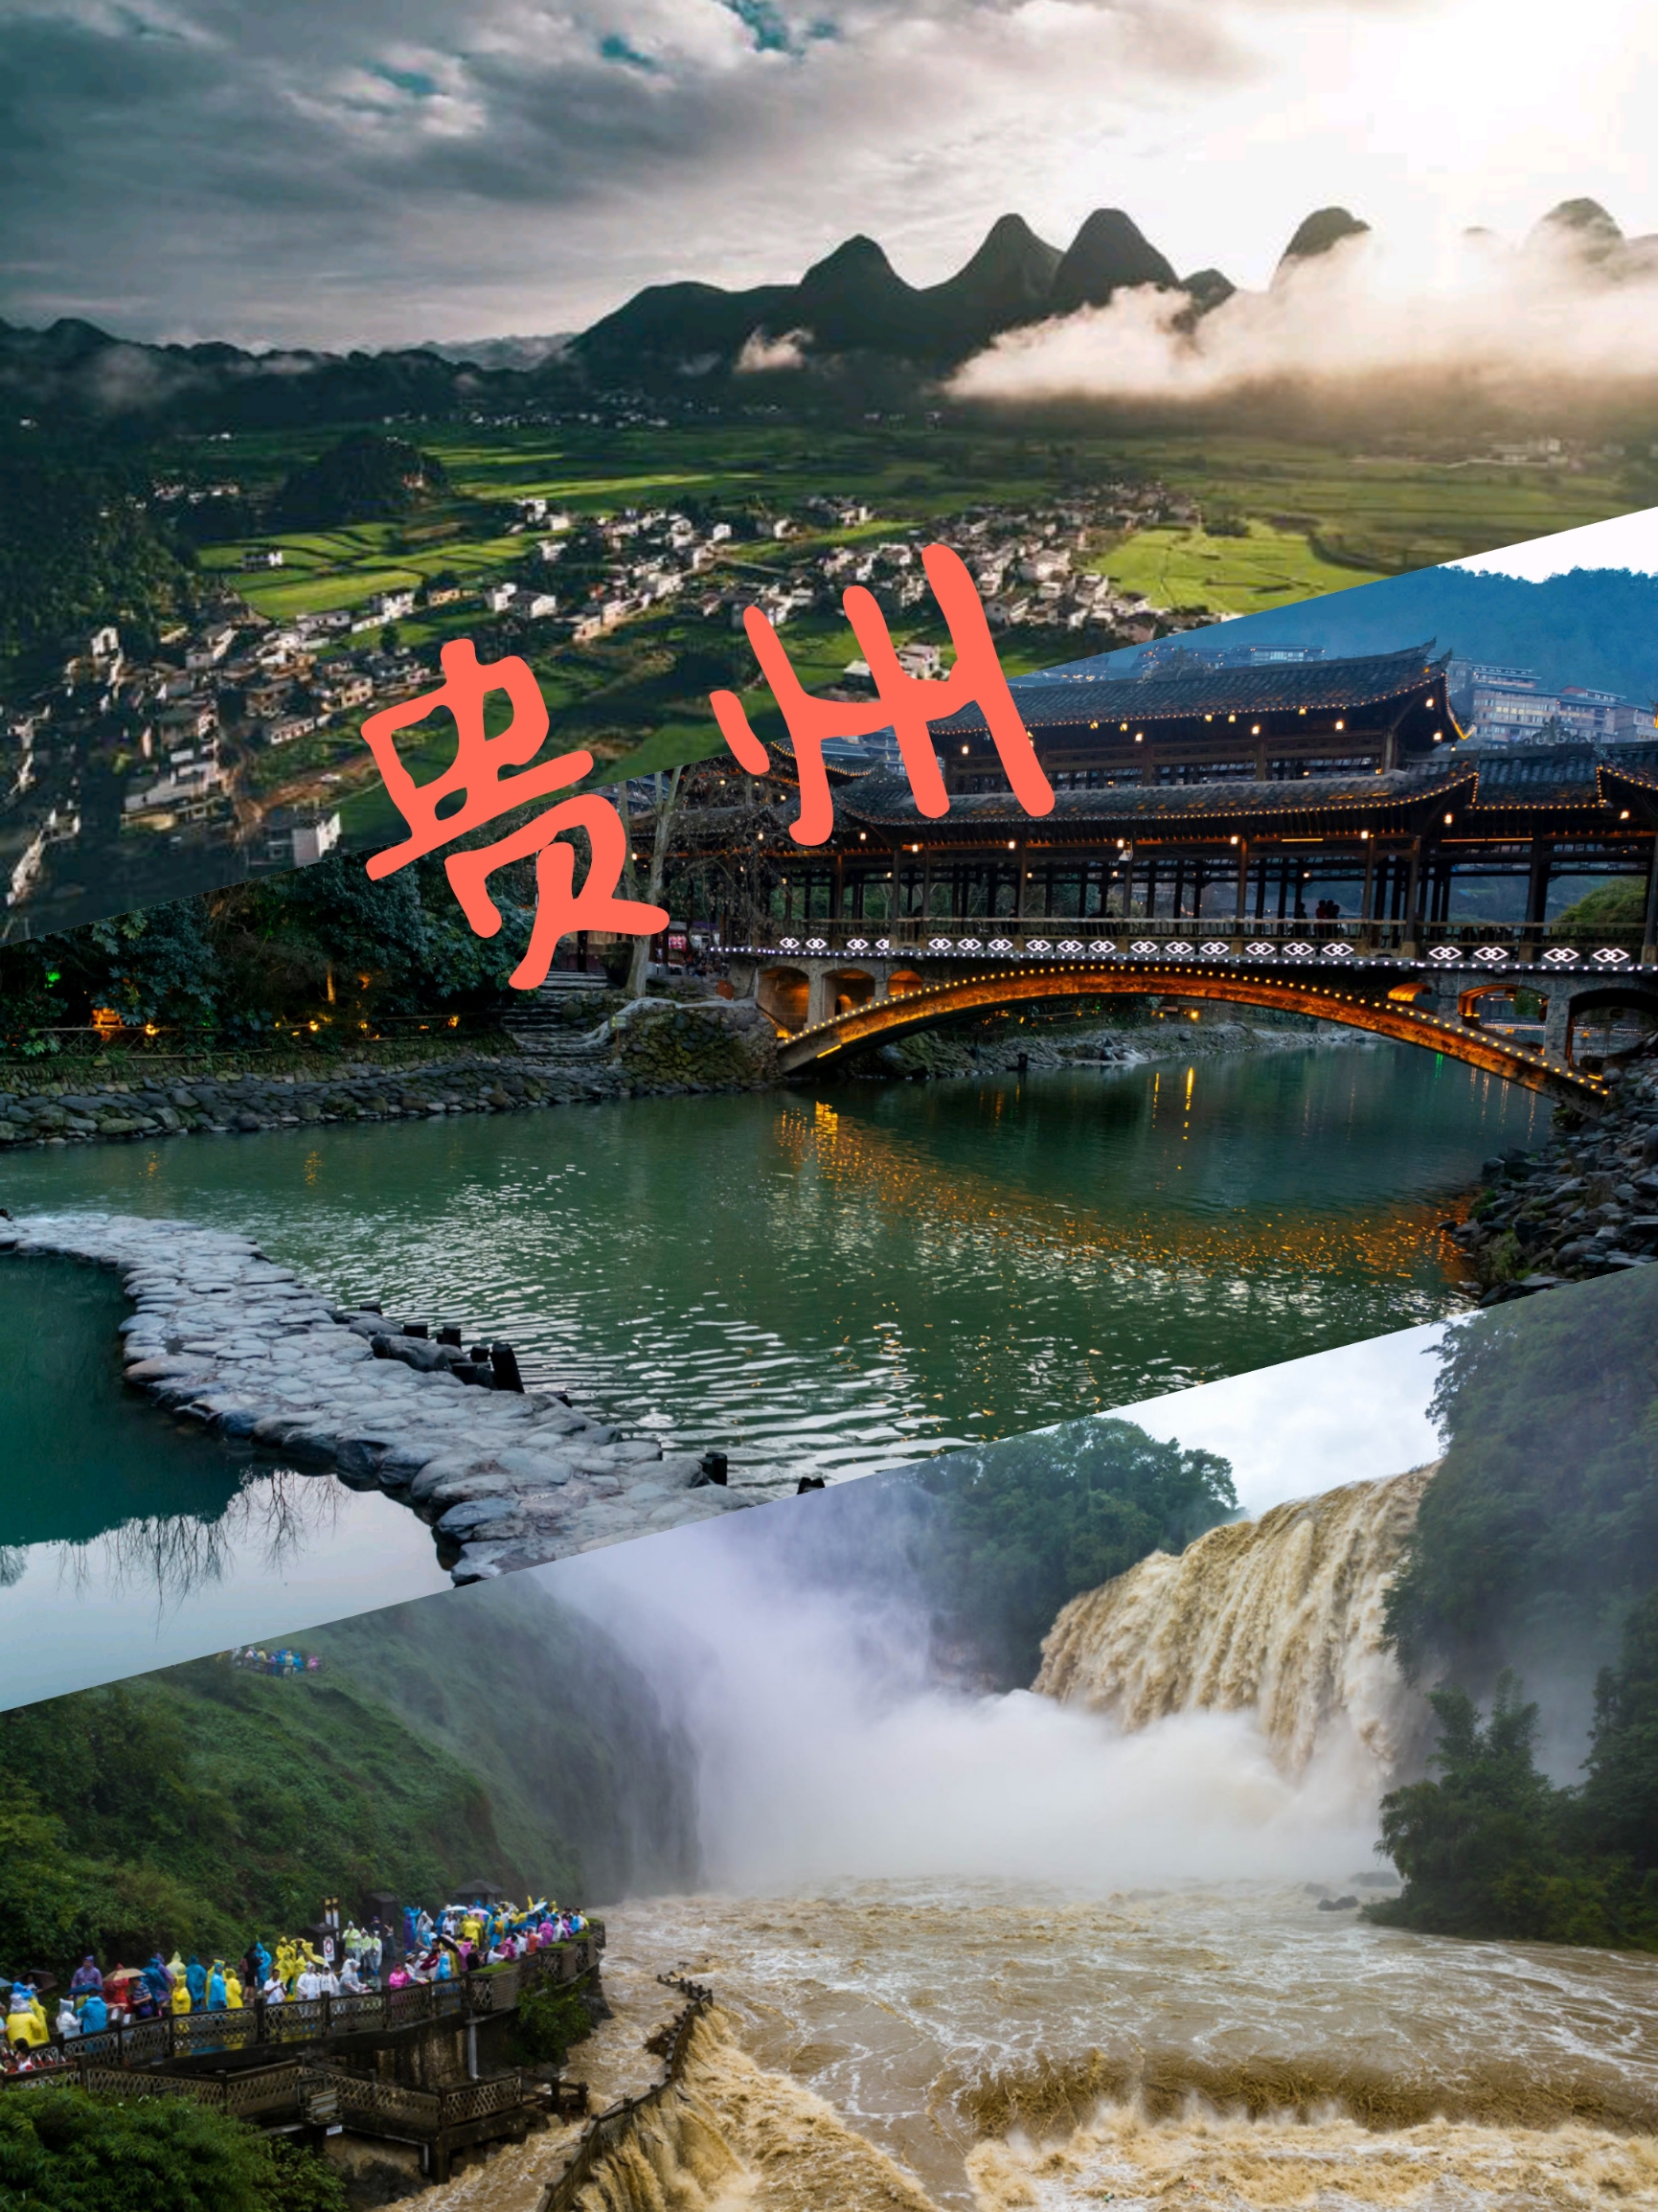 端午将近，贵州迎来了旅游黄金期。这里有众多知名景点，四天时间就可以玩遍！全国著名景点如黄果树瀑布、小